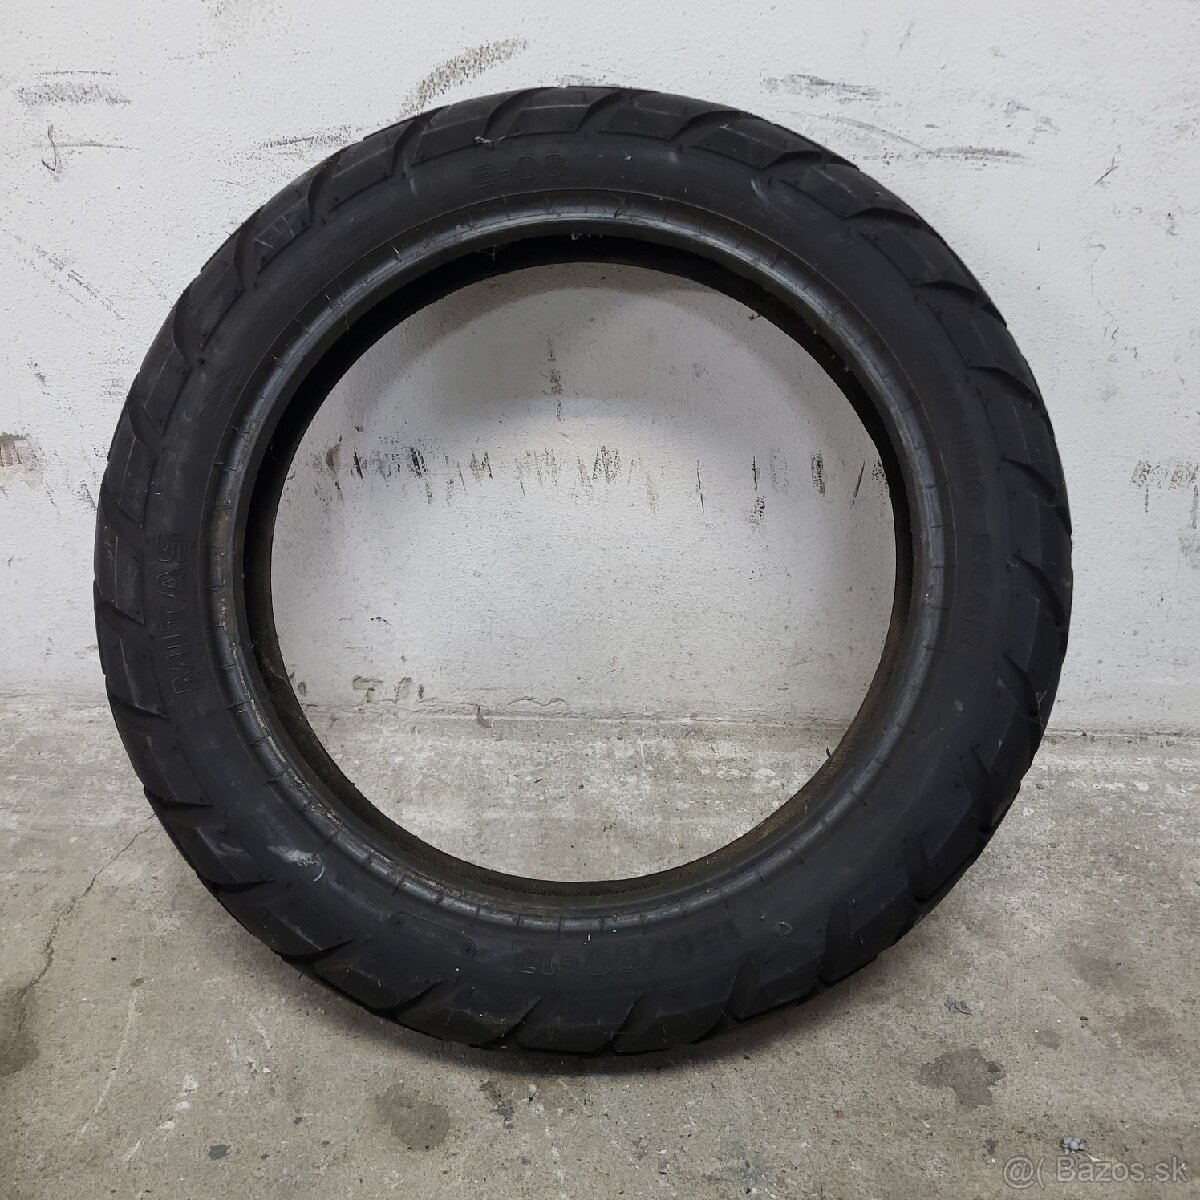 Predám zadnú pneu mitas 1308017